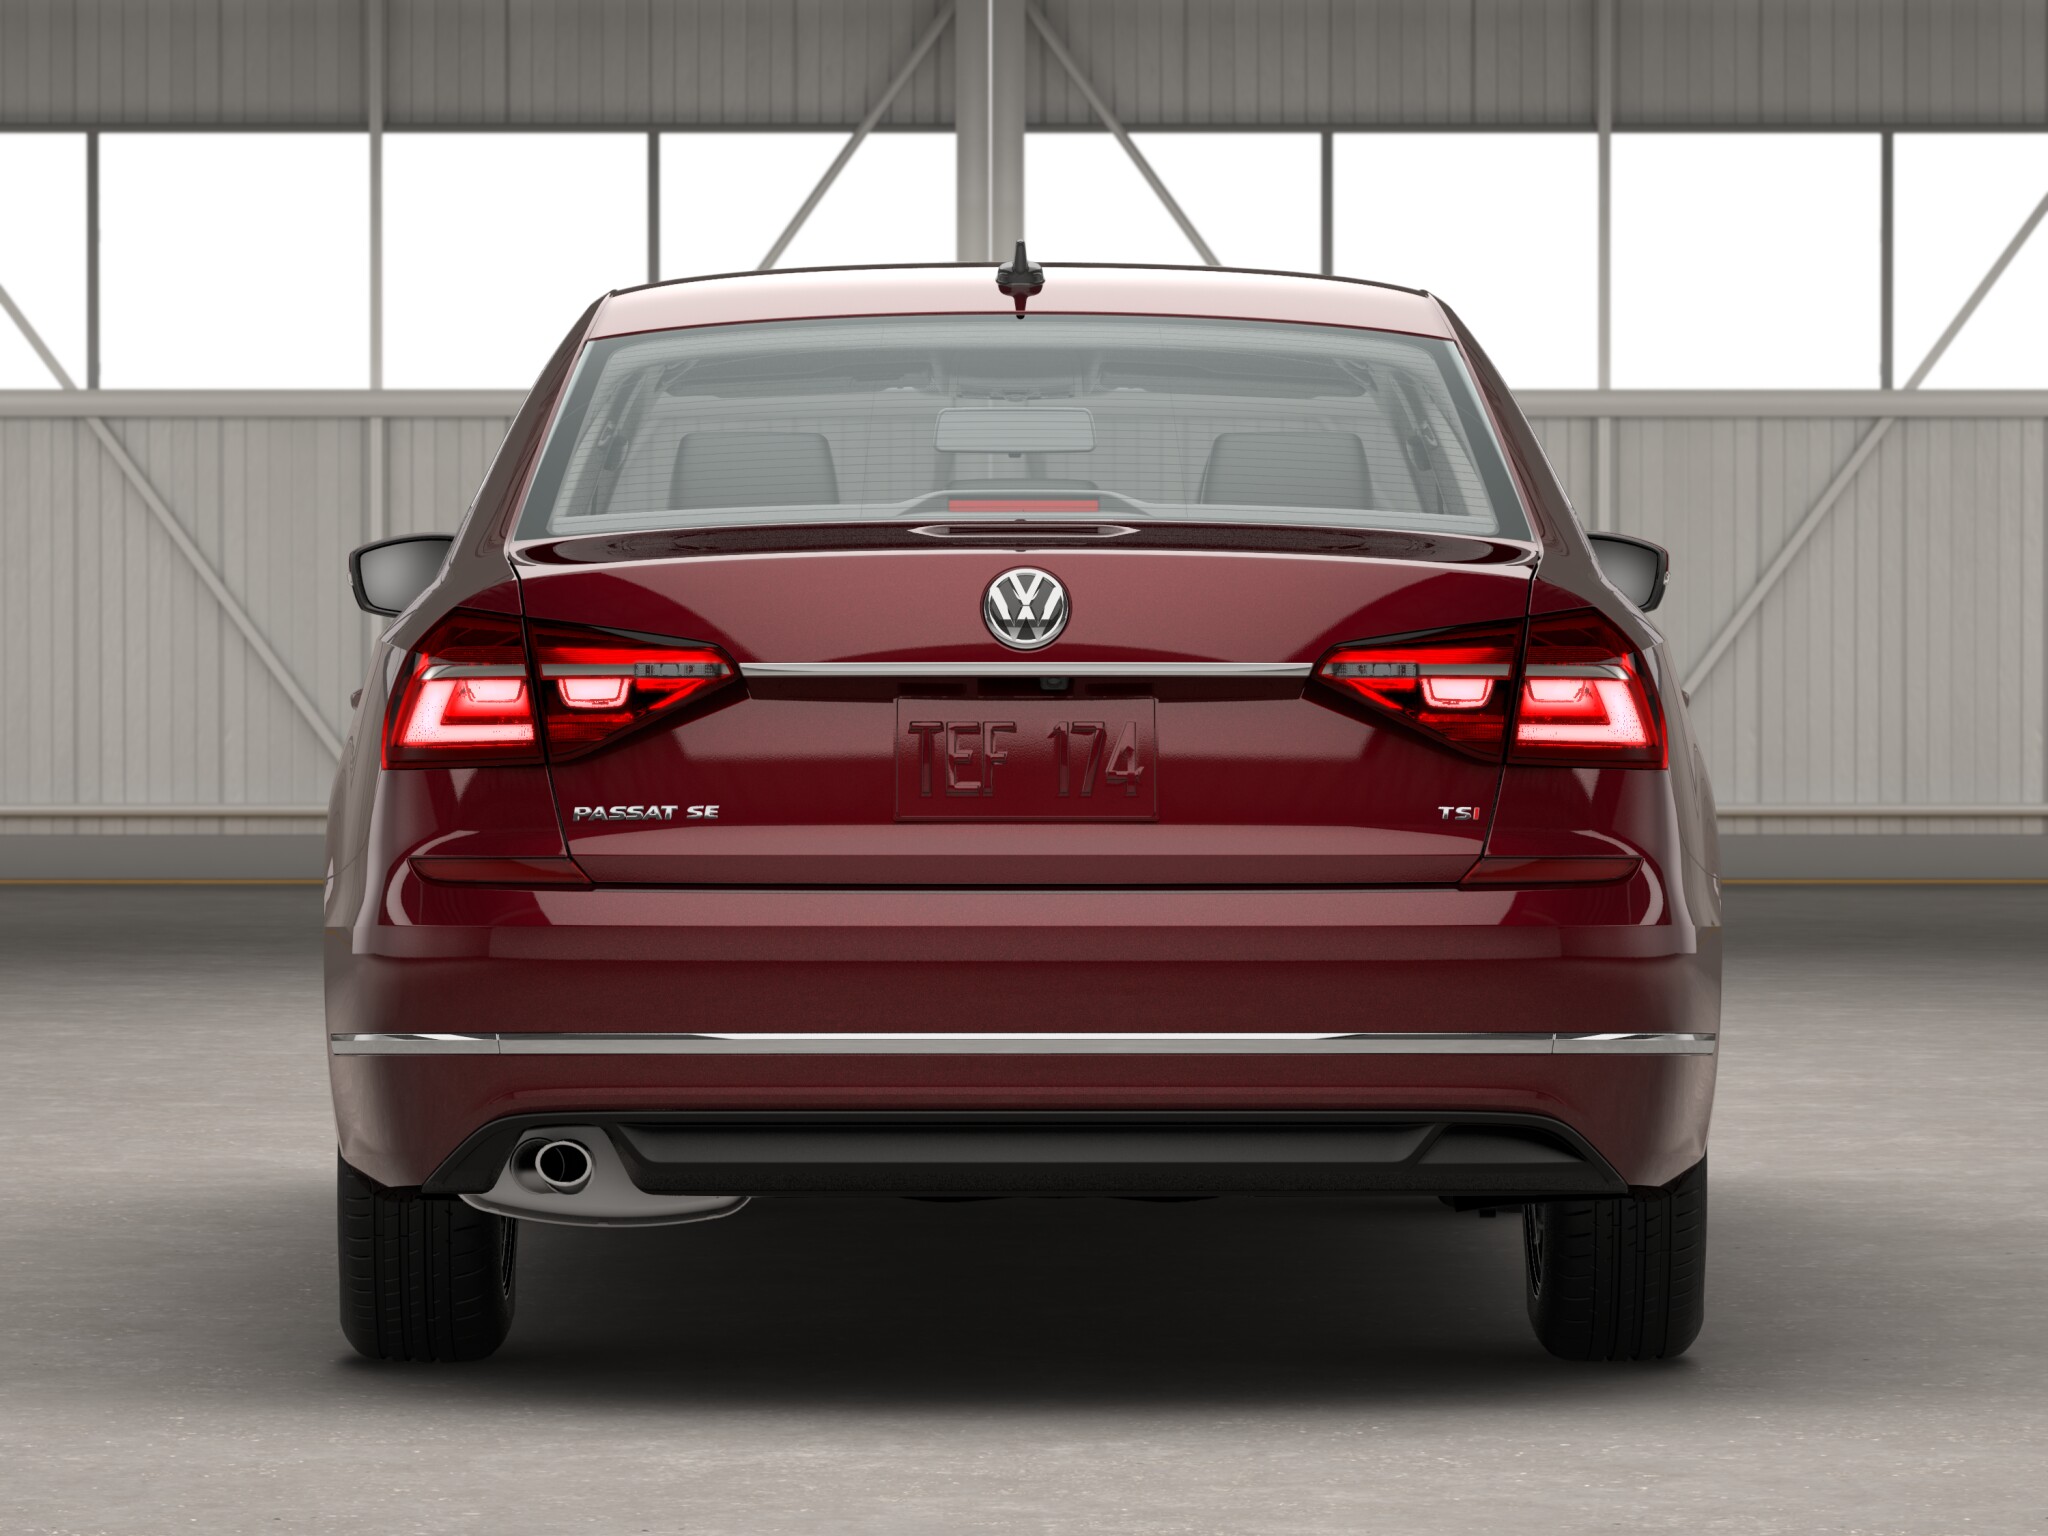 Volkswagen Passat 1.8T SE rear view